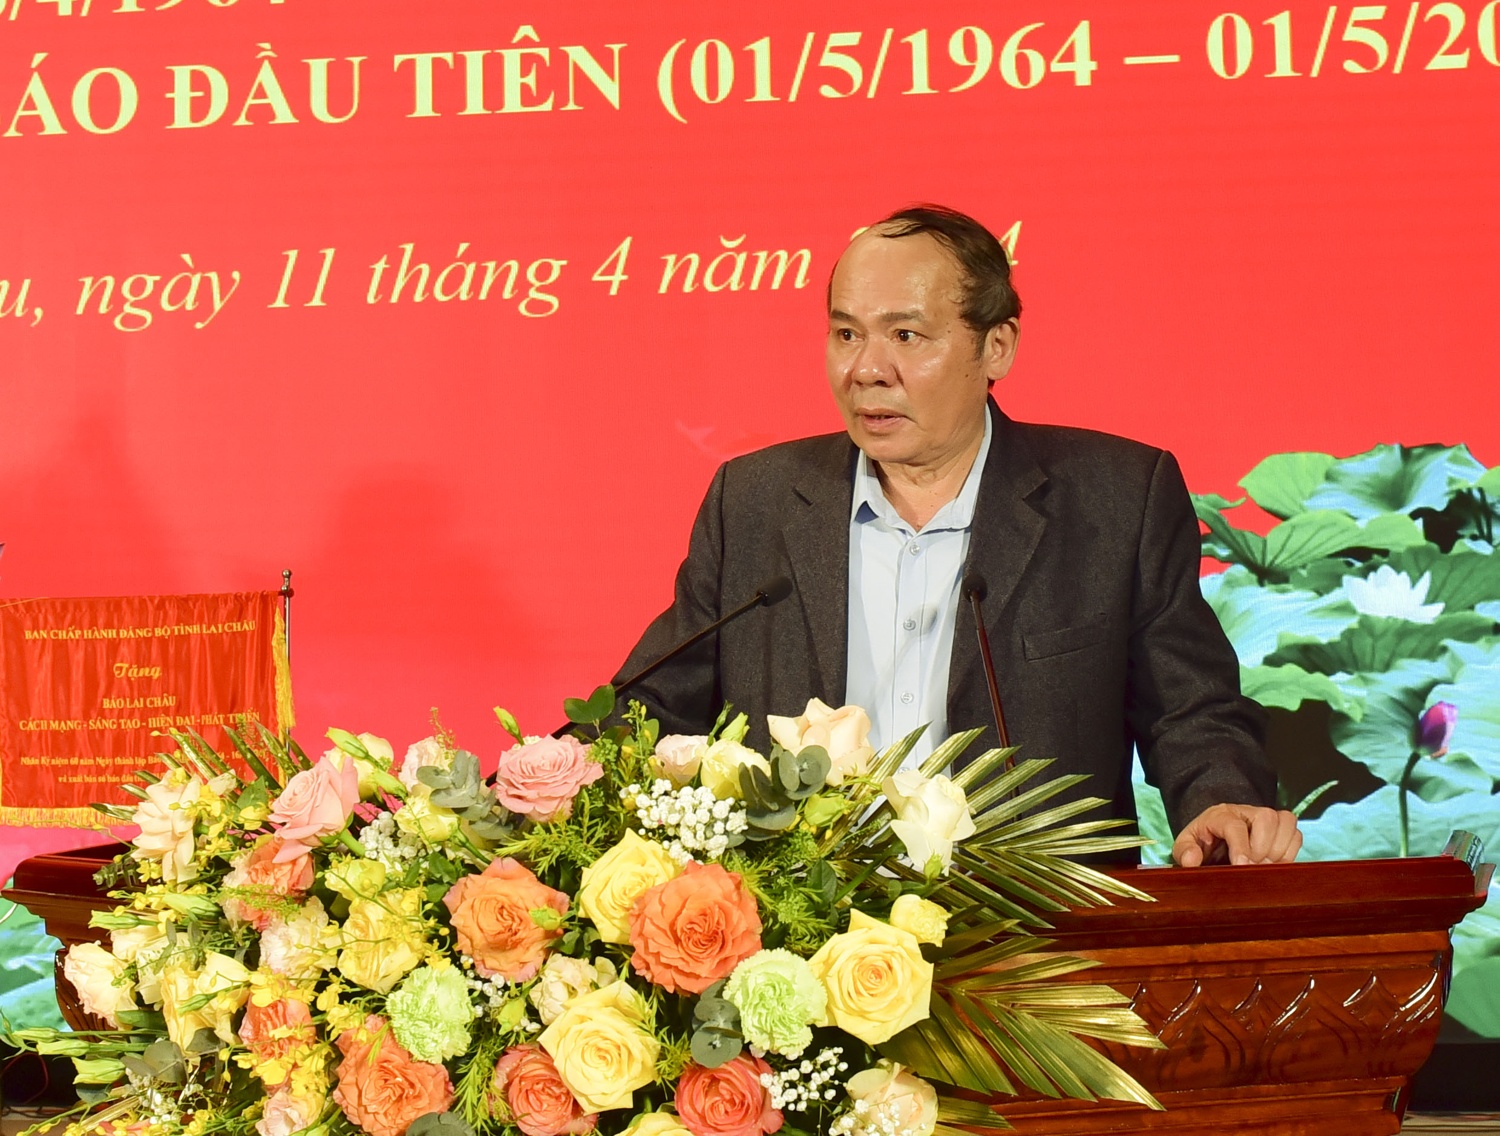 Đồng chí Khoàng Văn Thành, nguyên Tổng Biên tập Báo Lai Châu đã chia sẻ những kỷ niệm sâu sắc trong quá trình làm báo.

